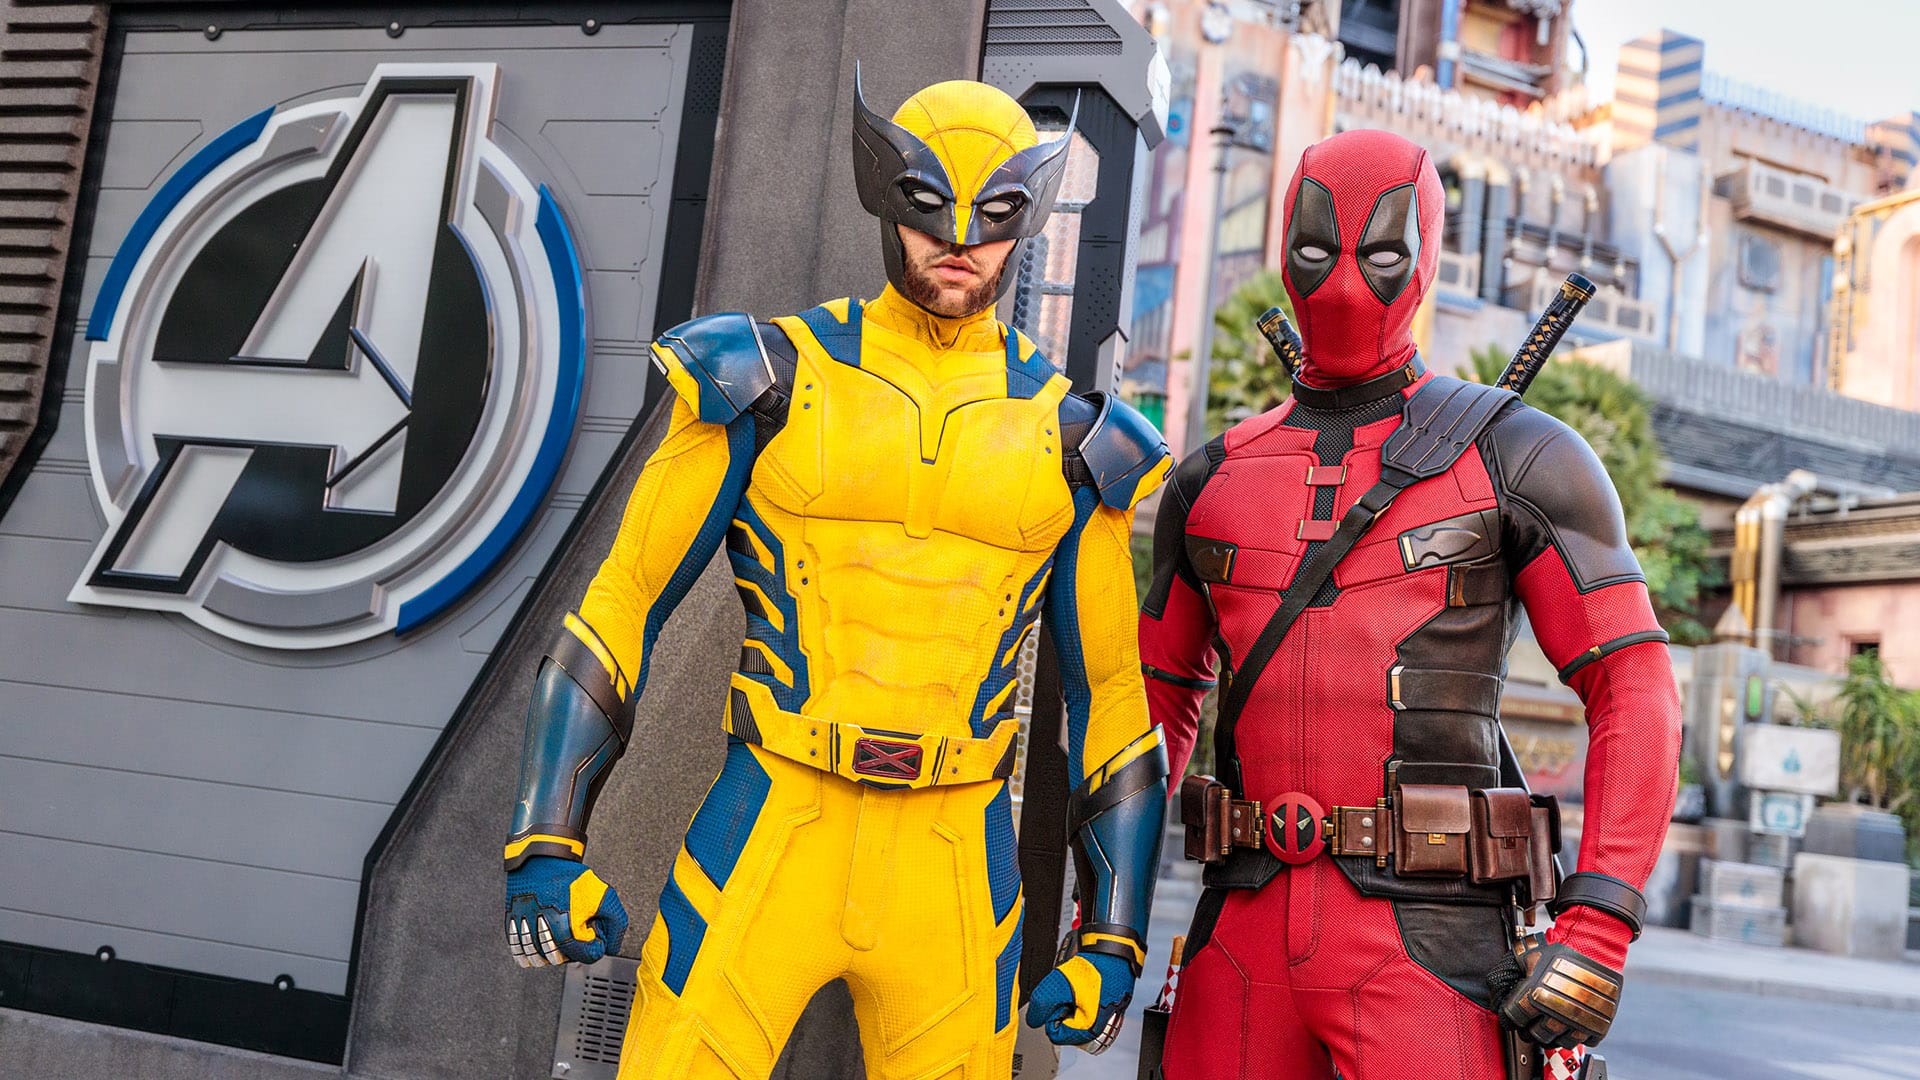 Let's Go! 'Deadpool & Wolverine' Transform Disney Experiences